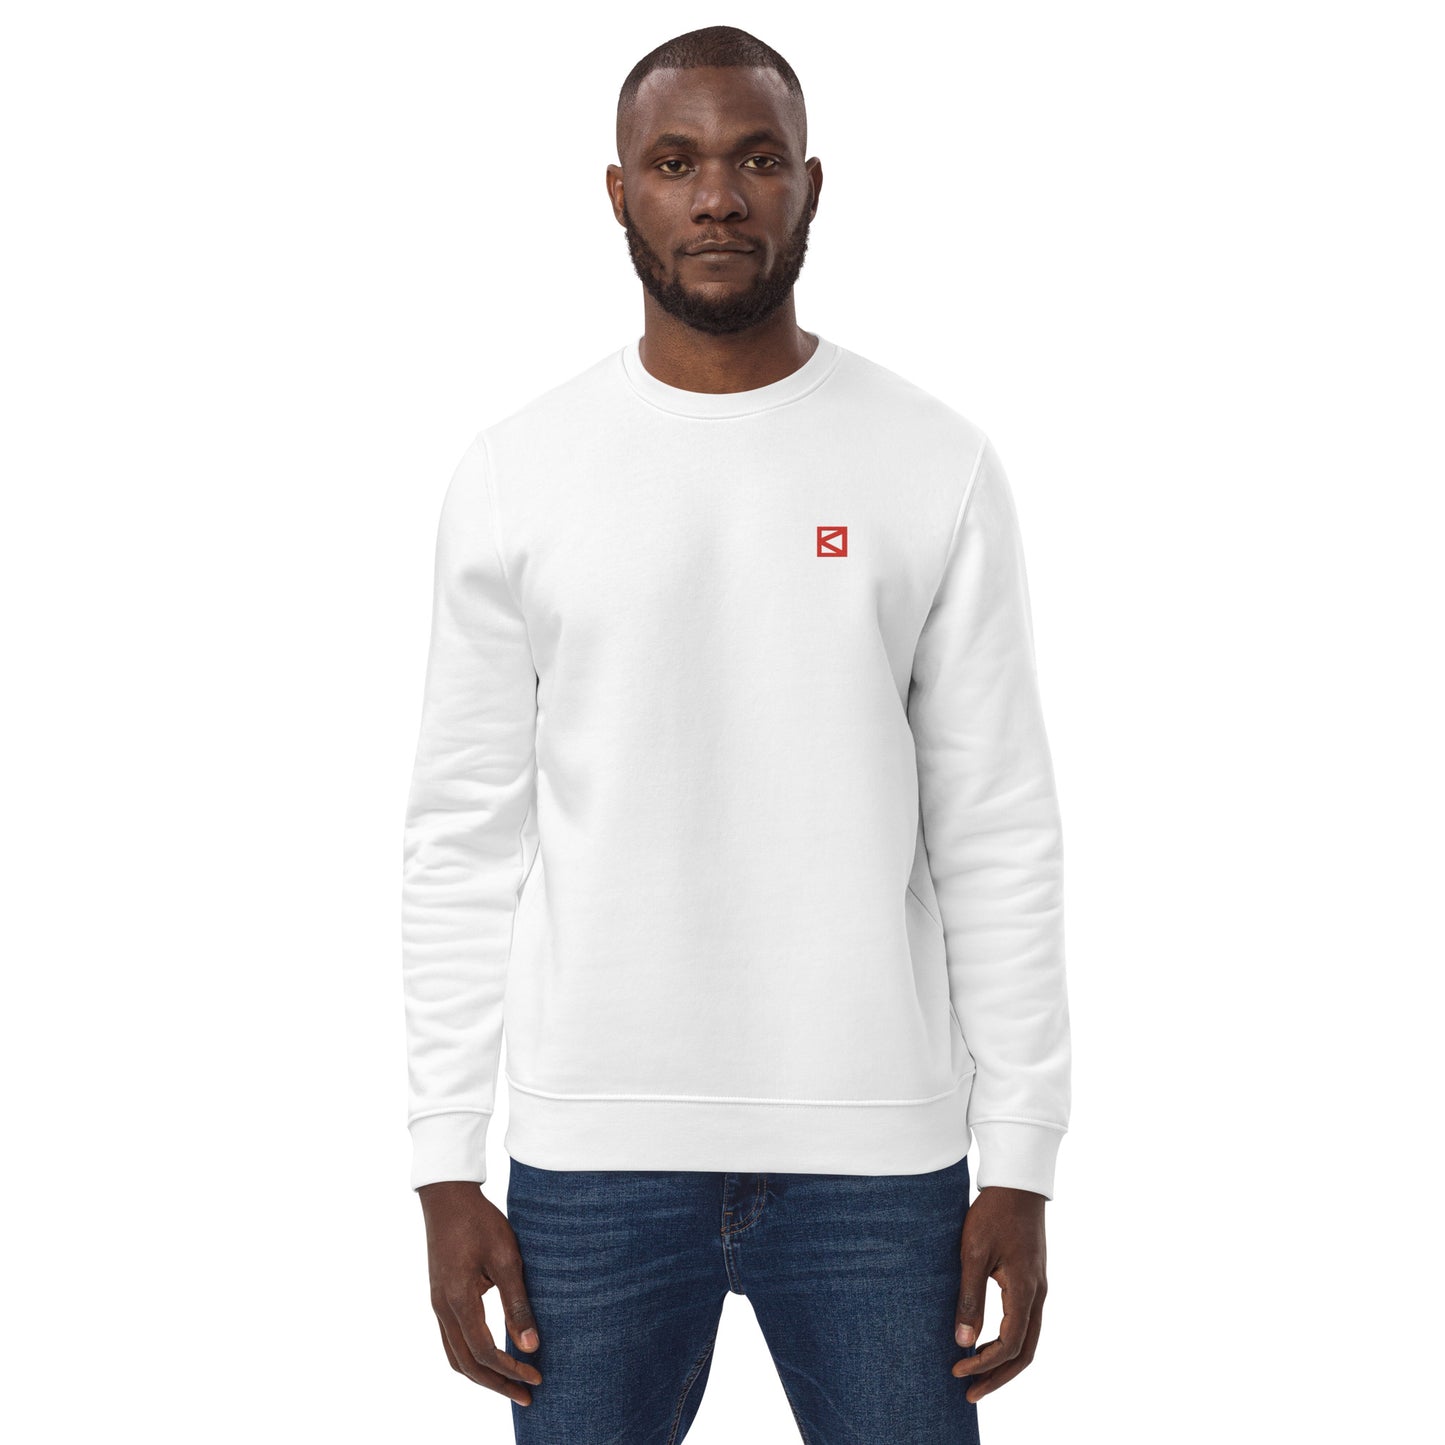 bd Stich Logo - Red - baobabwod artwear - Unisex Heavyweight Essential Eco Sweatshirt